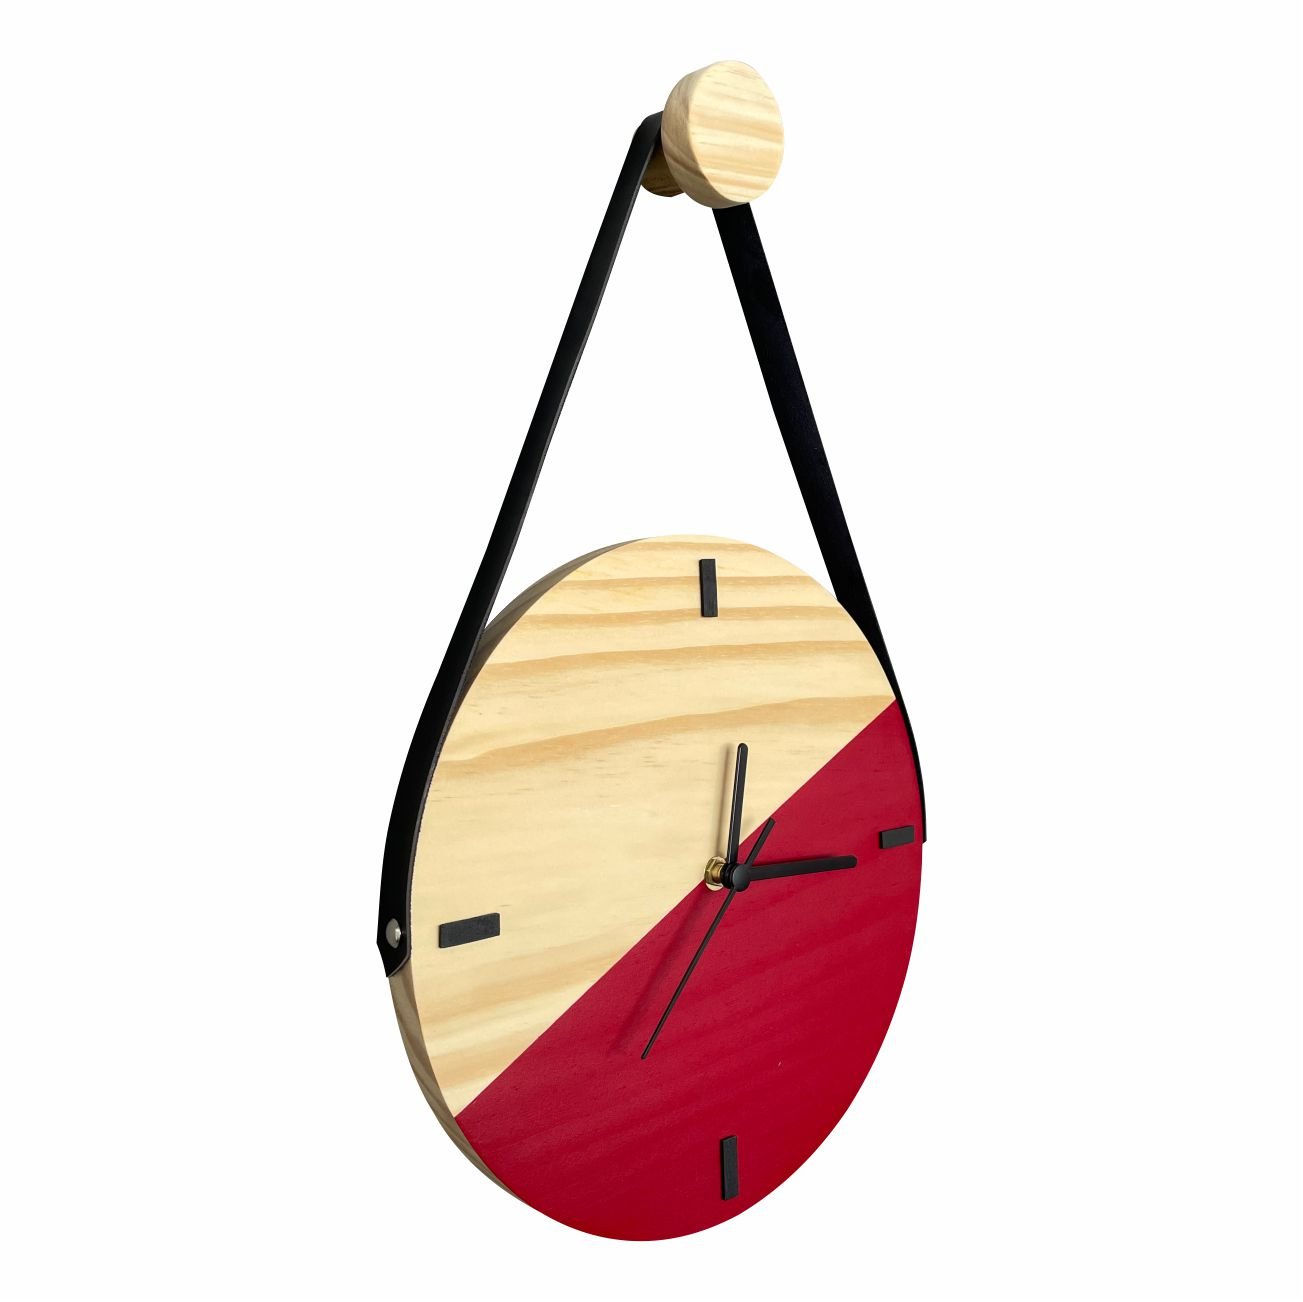 Relógio Decorativo Edward Clock Escandinavo Vermelho Ferrari - 3